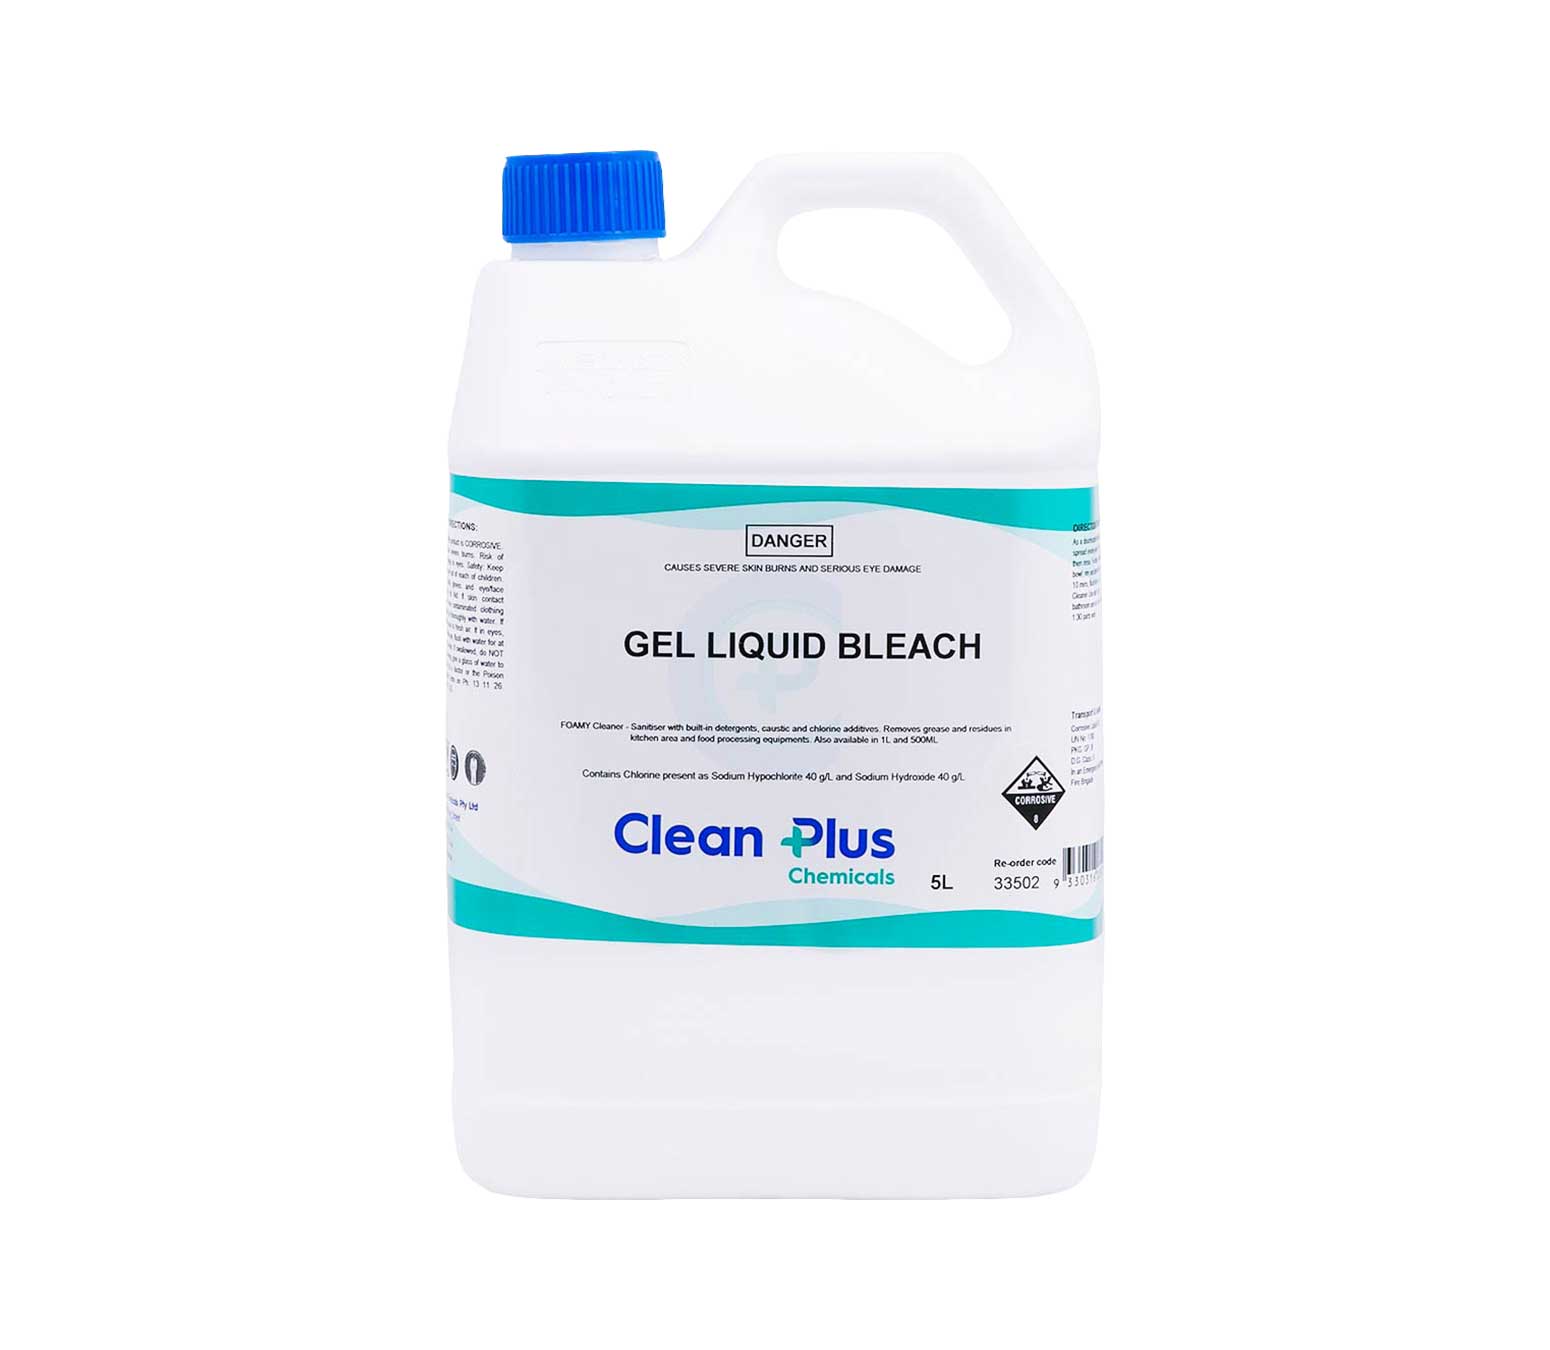 Gel Liquid Bleach - Cleaner Ð Sanitiser with built-in detergents.